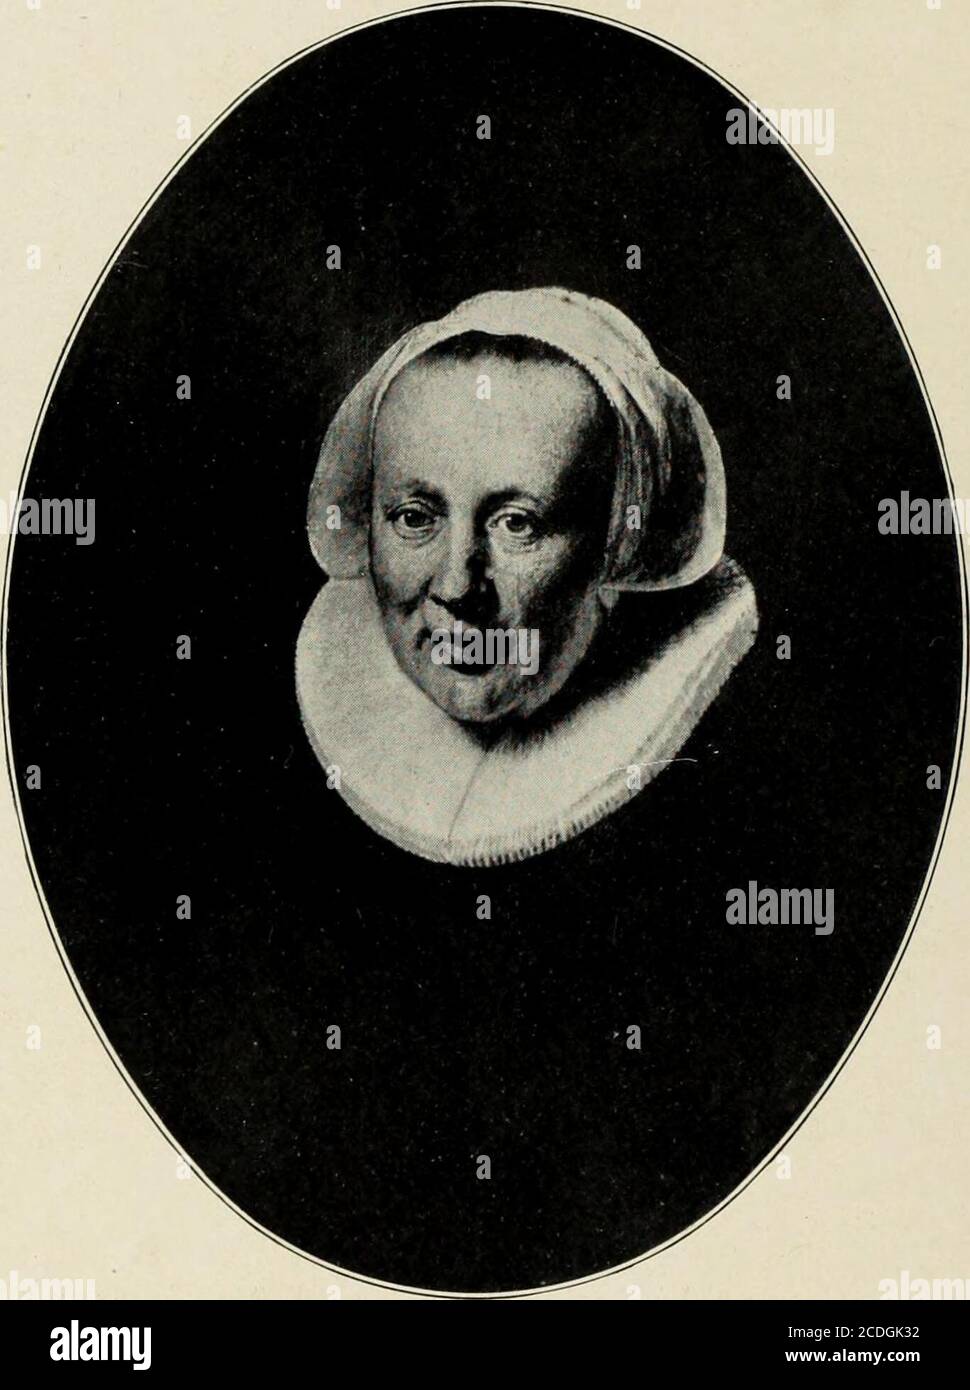 . Rembrandt; des meisters gemälde in 643 abbildungen . Petworth, Lord Leconfleld Portrait of a lady Bildnis einer Dame Um 1633B. 101 Auf Leinwand, H. 1,27, B. 1,01 Portrait dune dame Rembrandt 7 97. Warschau, Exe. von Lachnicki Auf H0I7, H. 0,67, B. 0,50 Bildnis einer Frau Portrait of a lady 1633 Portrait dune dame B. 561 98 /^7V V.;.-oy•??*? ? ^& ».-^B ., SS^^I glgg # ^. SP J uV#&*&gt;^ - 1 /^V ^* ^ Wim nf.^Ho^W ^Ymt E JH 1 mWim ^ JIM ^S v 4? Paris, Mme. Isaac Pereire Auf Leinwand, H.0,72, B. Ü.62 Bildnis einer jungen FrauPortrait of a young lady Um 1633 Portrait dune jeune femme B. 92 99 V. Stock Photo